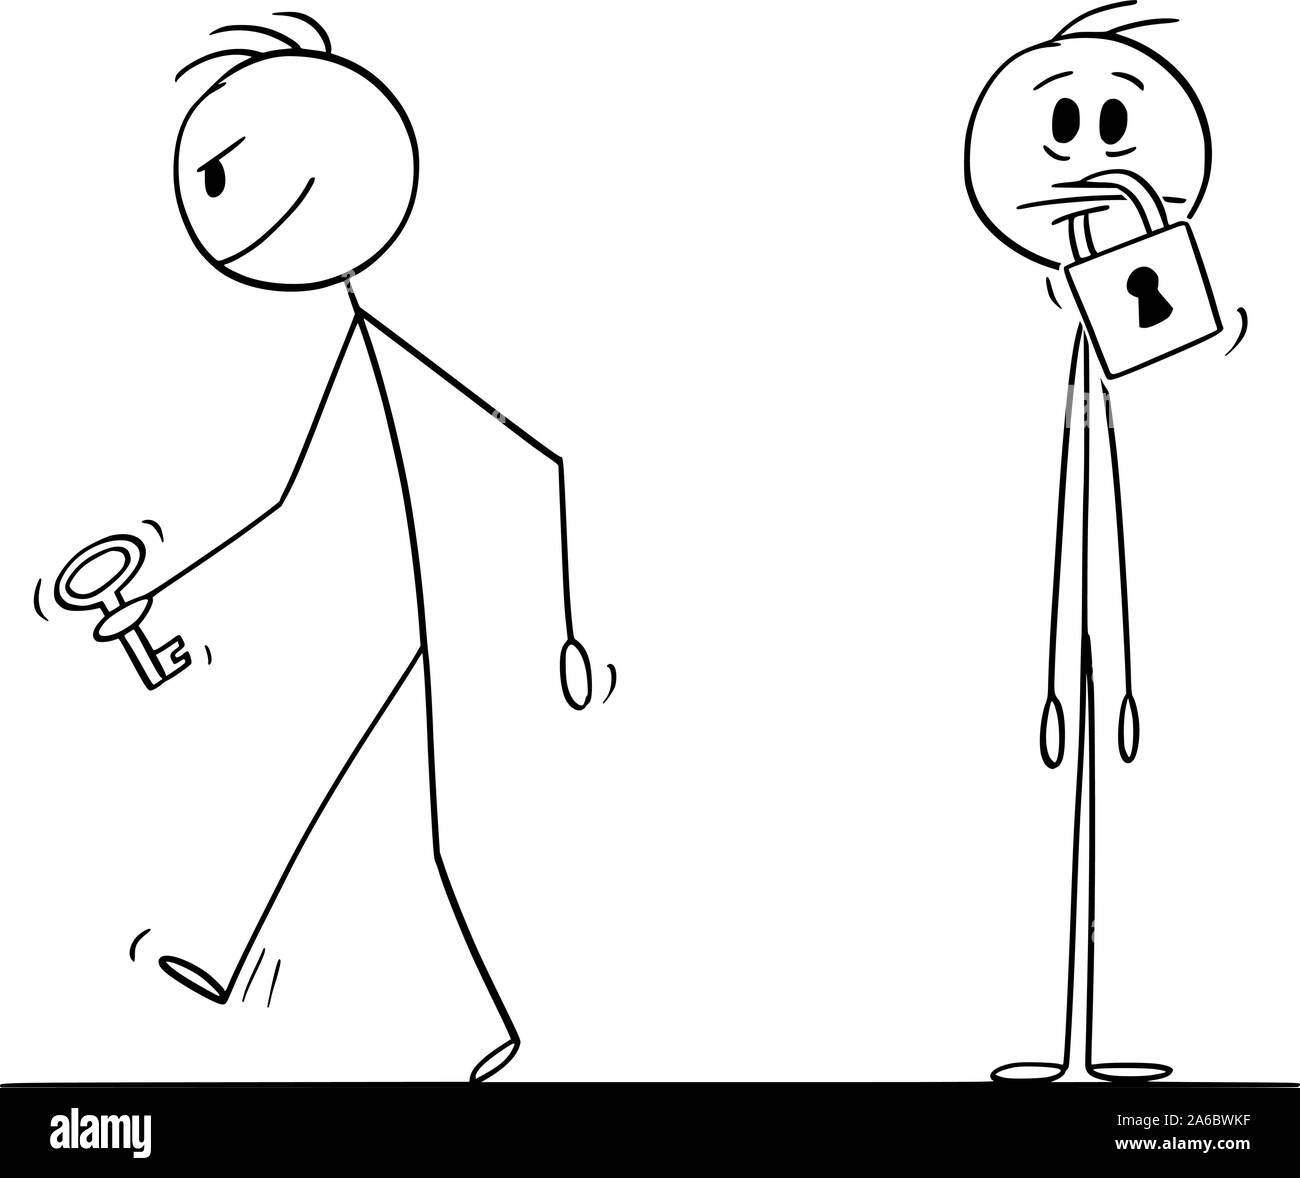 Vektor cartoon Strichmännchen Zeichnen konzeptionelle Darstellung der Mann mit Vorhängeschloss auf seinem Mund, einen anderen Mann verlassen mit Schlüssel ist. Konzept der Stille und Zensur. Stock Vektor